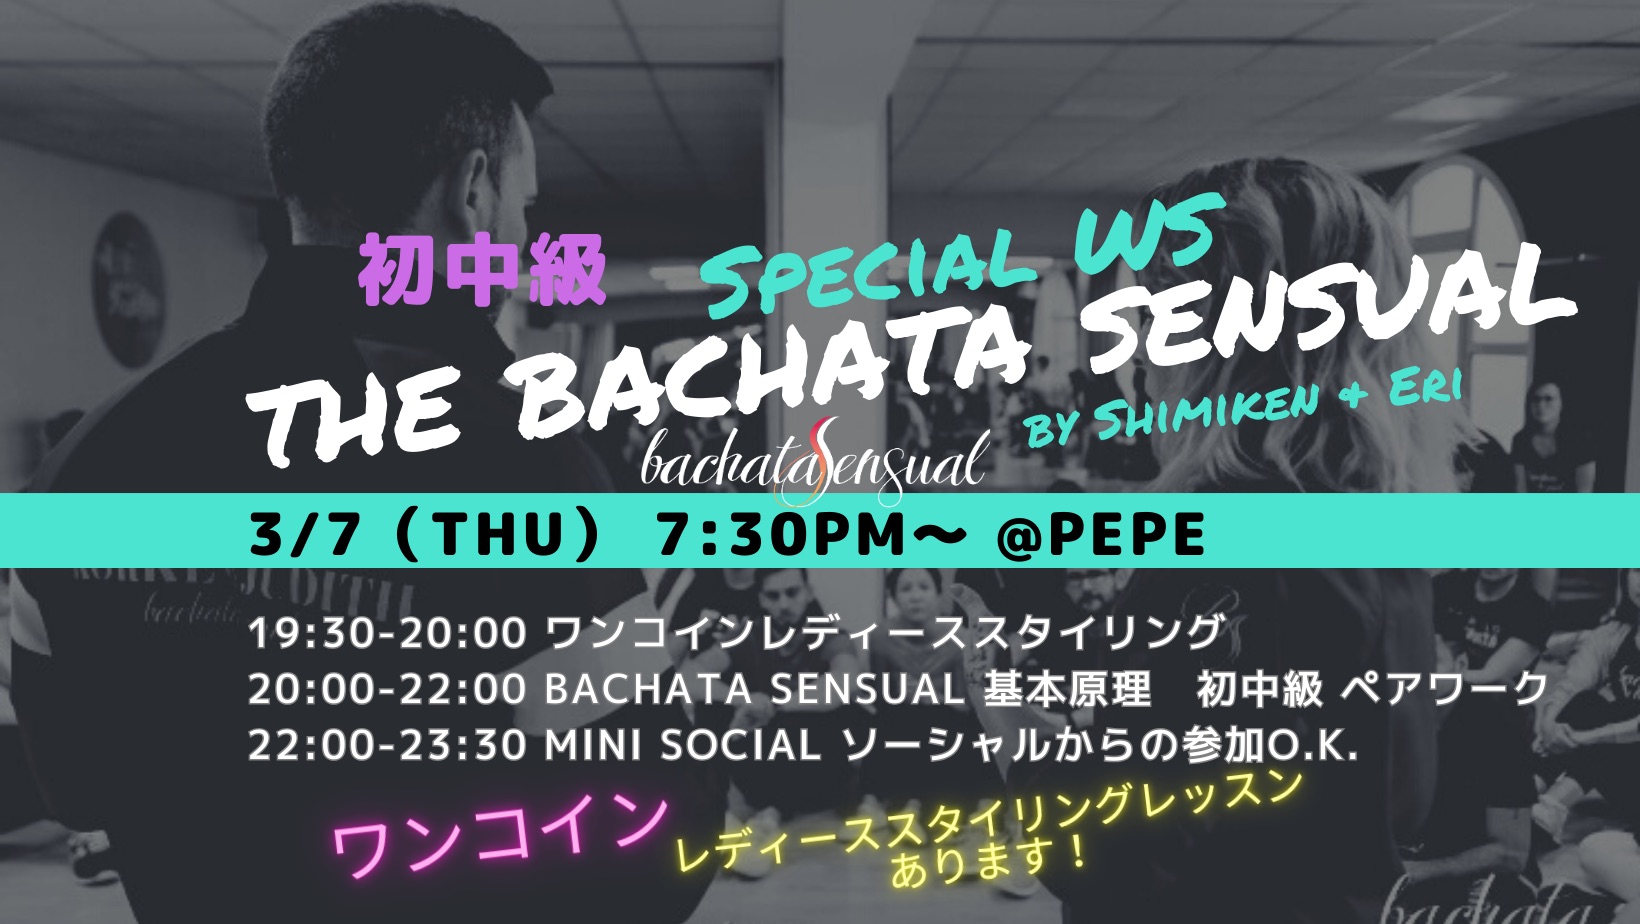 予約制The Bachata Sensual Special WS 初中級編